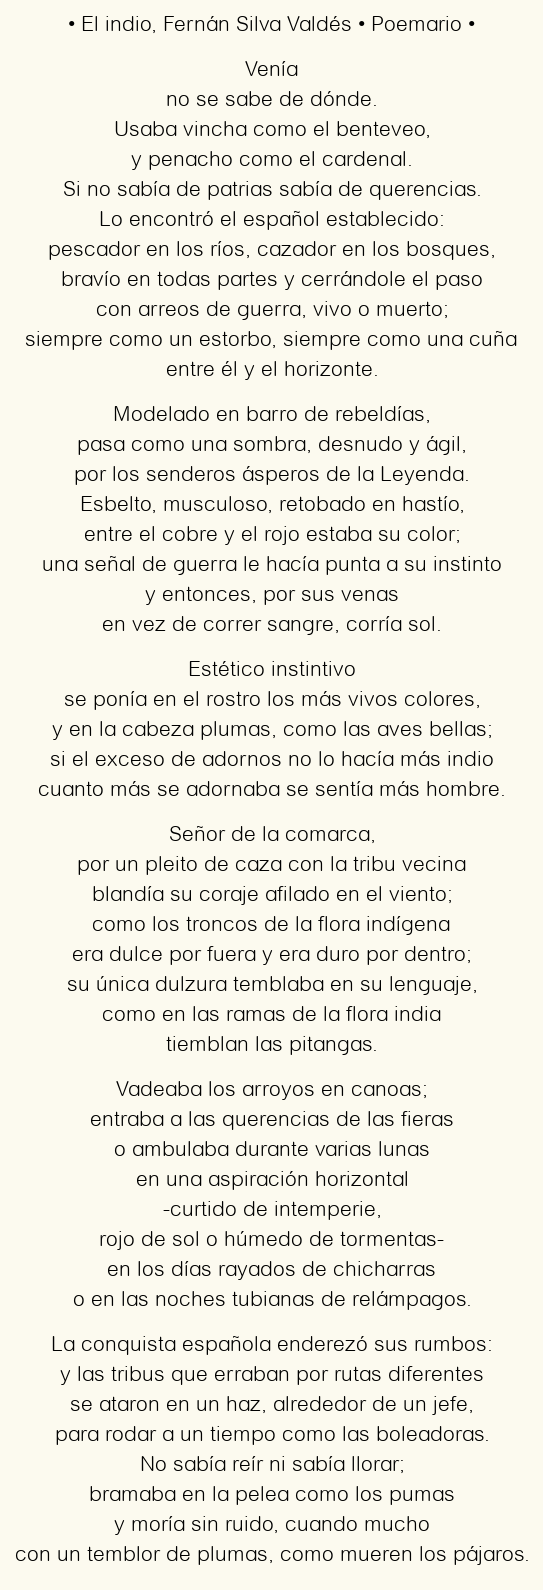 Imagen con el poema El indio, por Fernán Silva Valdés